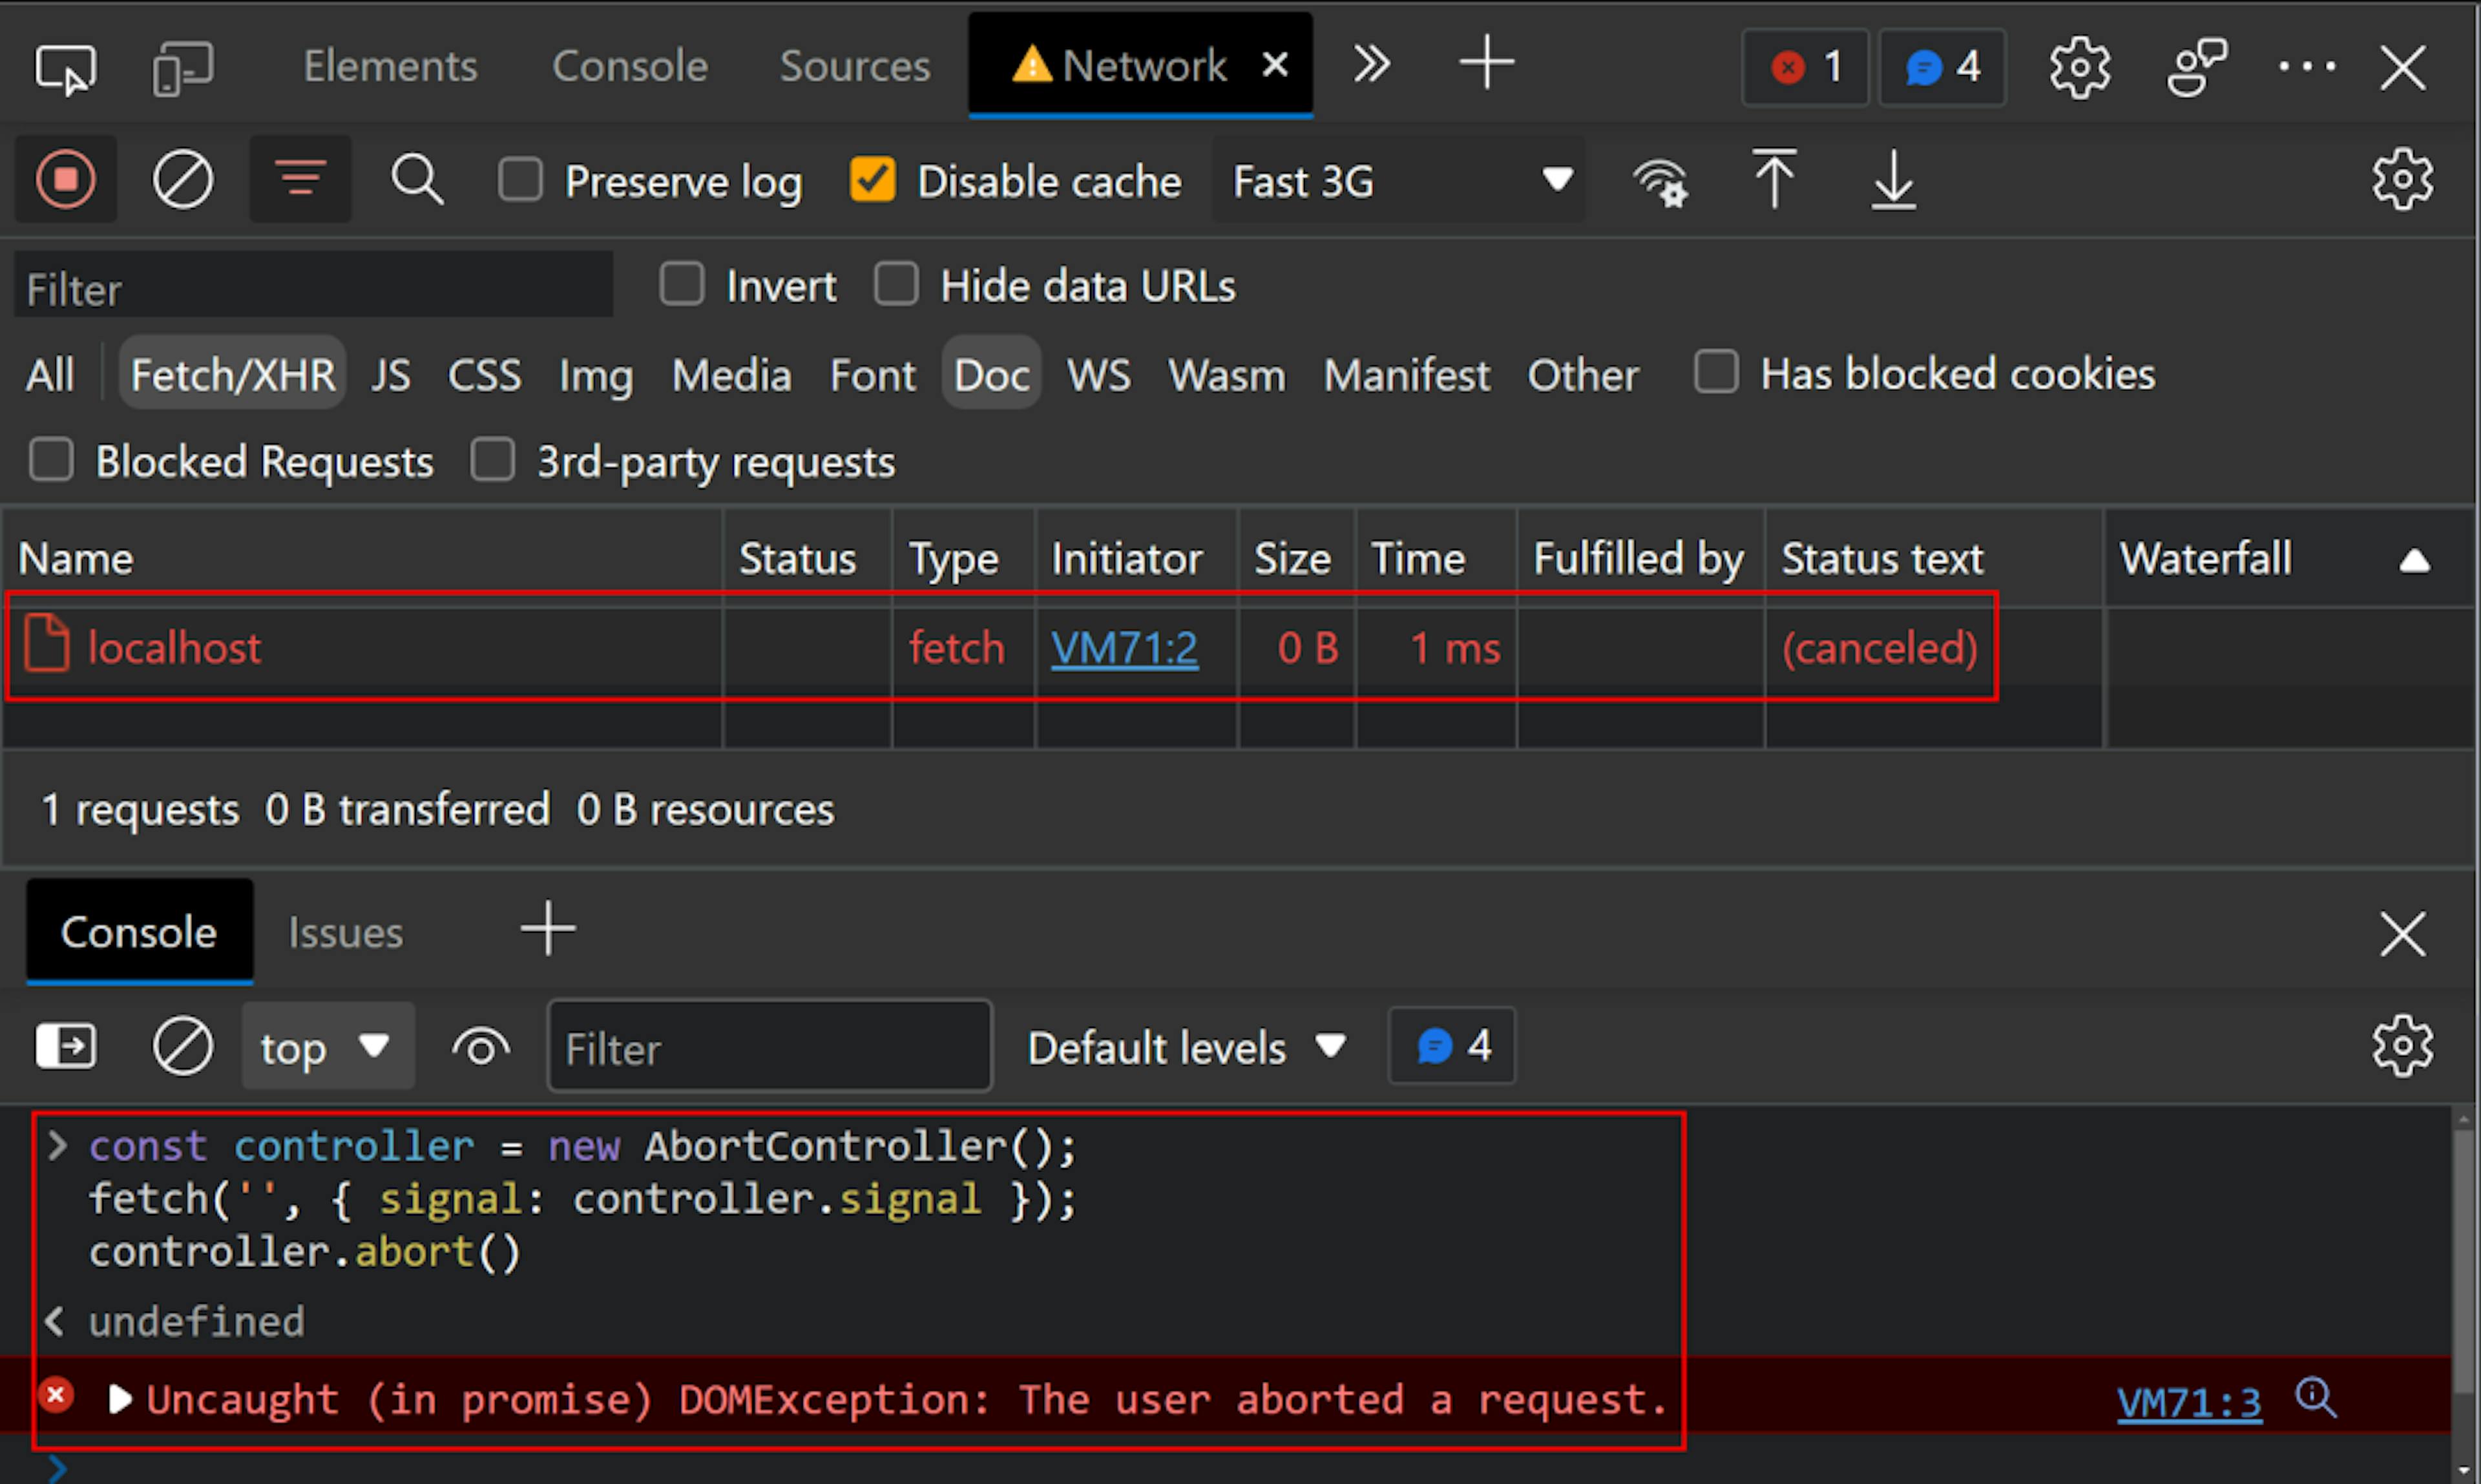 As ferramentas de desenvolvimento do Chrome são abertas na rede com o console JavaScript aberto. No console está o código "const controller = new AbortController();fetch('', { signal: controller.signal });controller.abort()", seguido pela exceção, "Uncaught (in promise) DOMException: The usuário cancelou uma solicitação." Na rede, há uma solicitação para "localhost" com o texto de status "(cancelado)"